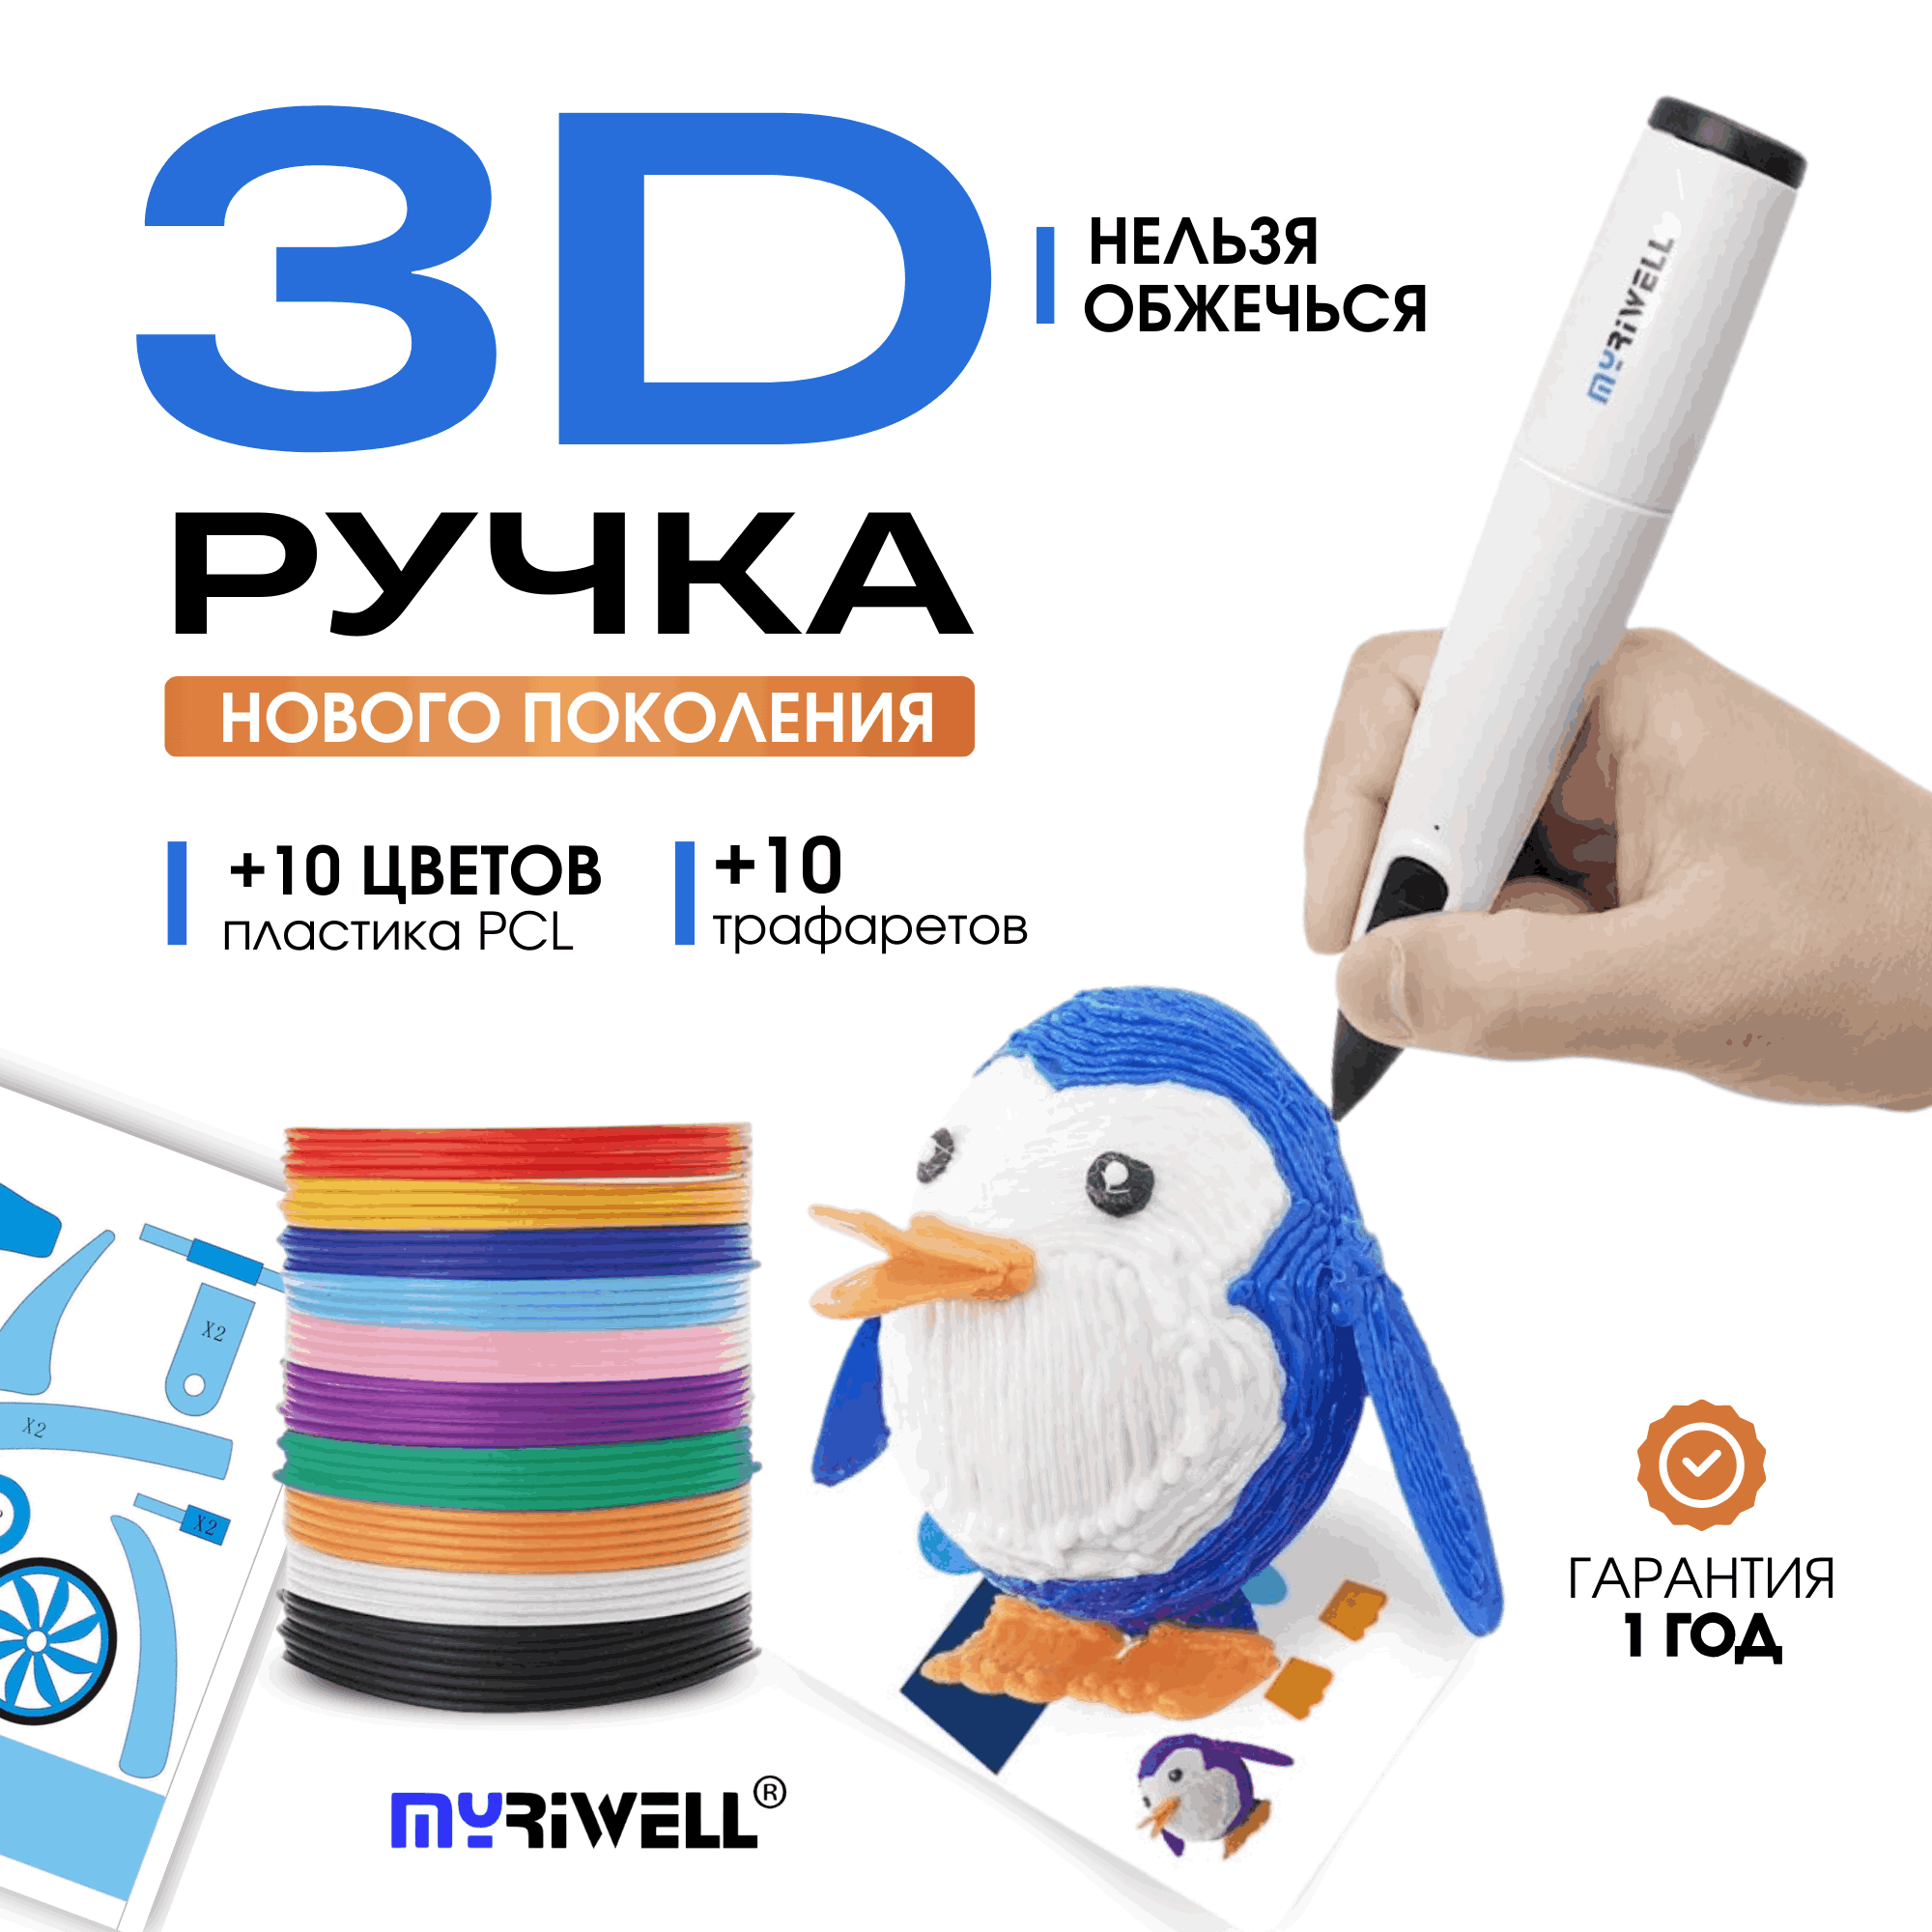 3D ручка Myriwell RP300B + 10 цветов пластика PCL и 10 трафаретов Голубой 3d ручка myriwell rp100b со светящимся в темноте пластиком и набором трафаретов голубой